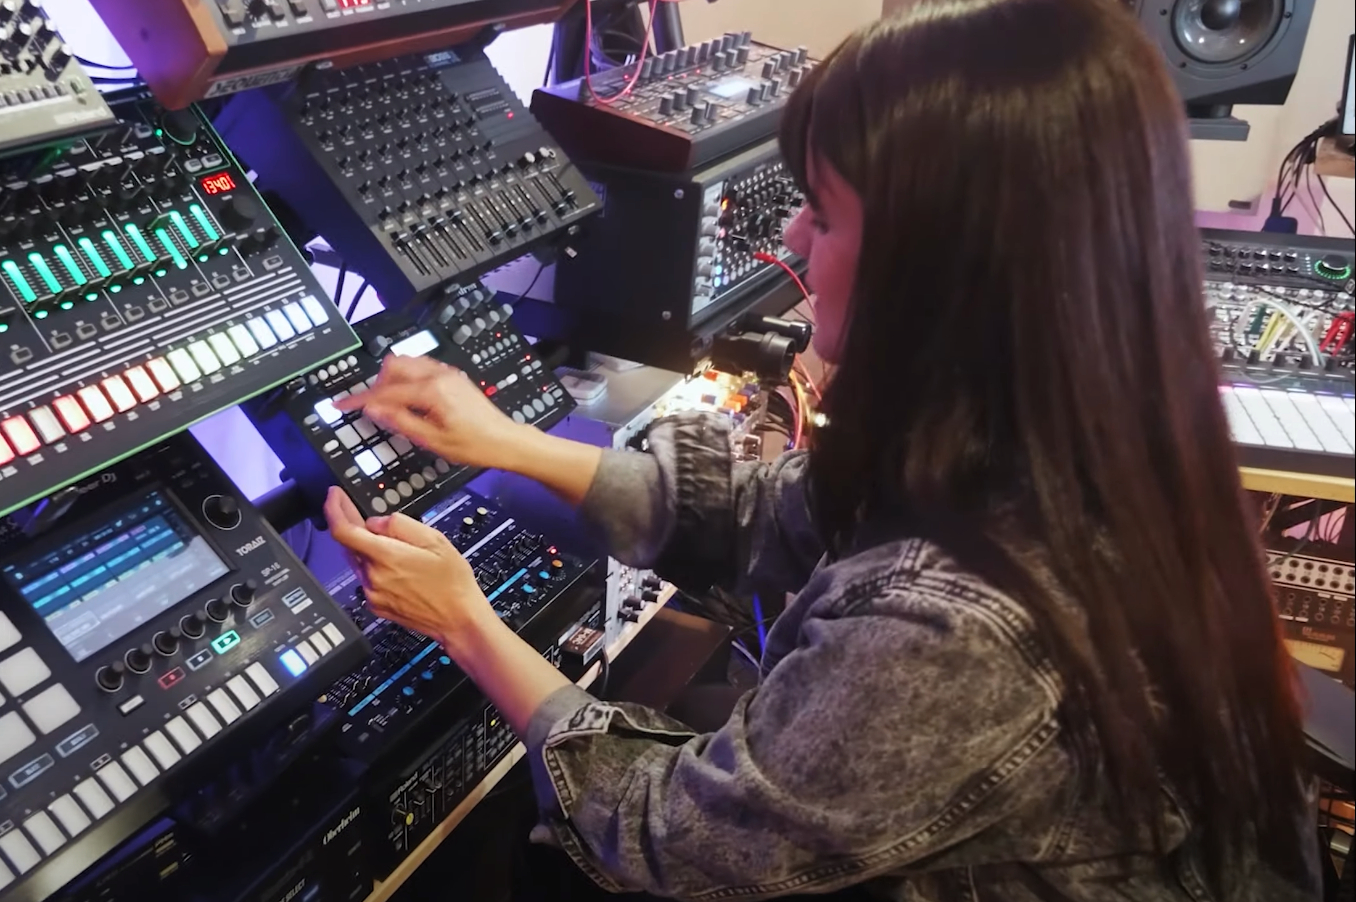 Estreia documentário de ANNA, DJ que tocou três dias seguidos no Tomorrowland